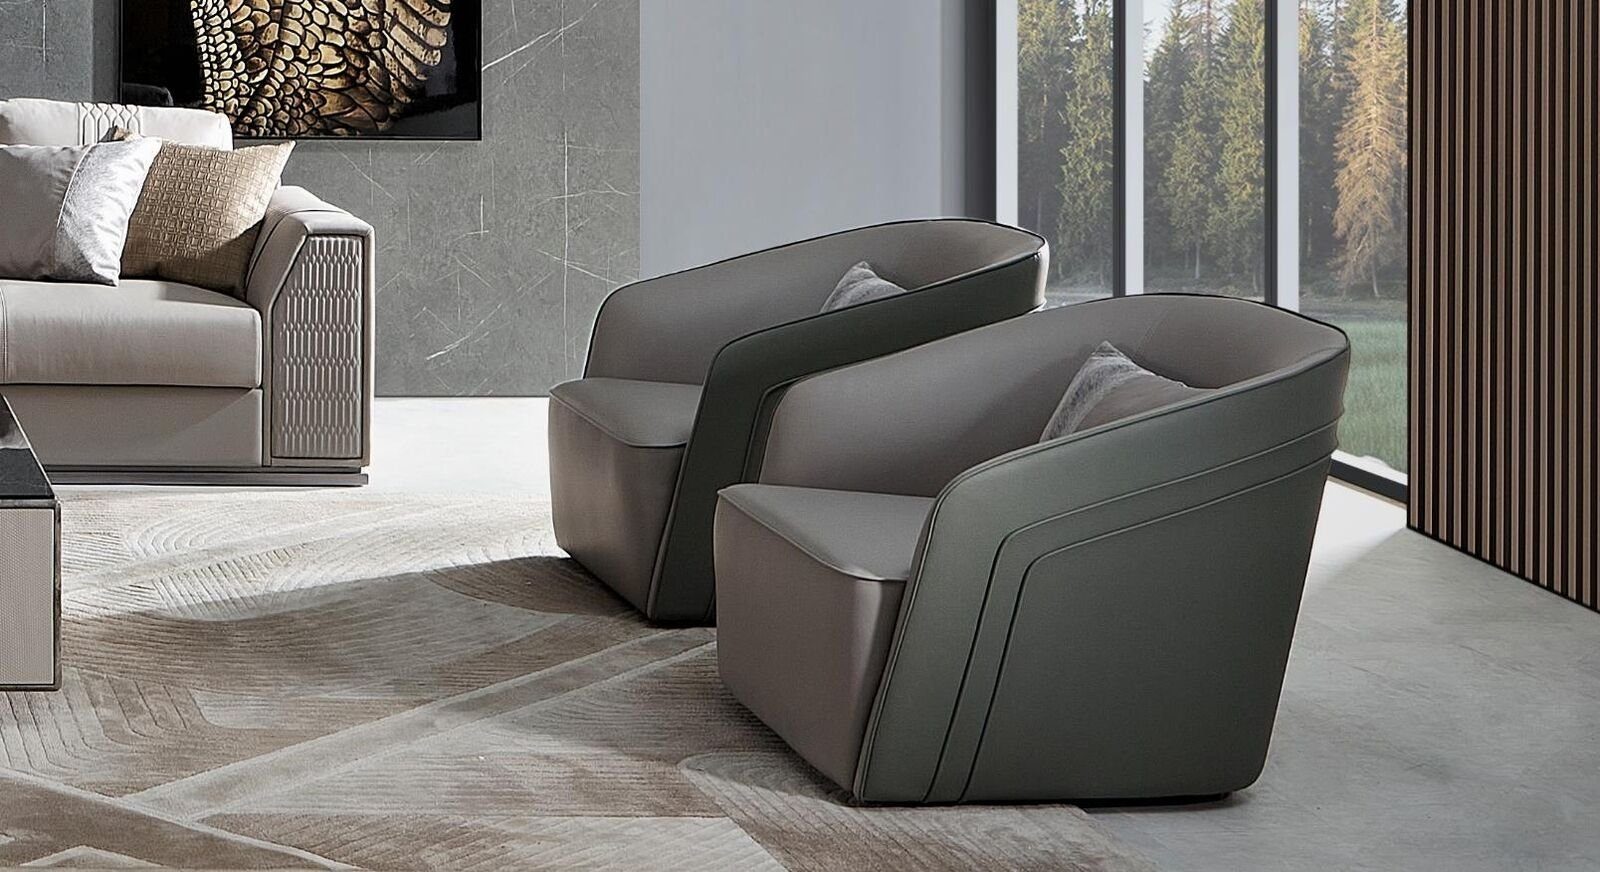 JVmoebel Sessel Sessel Club Lounge Lehn Stuhl Polster Sofa 1 Sitzer Fernseh Samt Leder | Einzelsessel